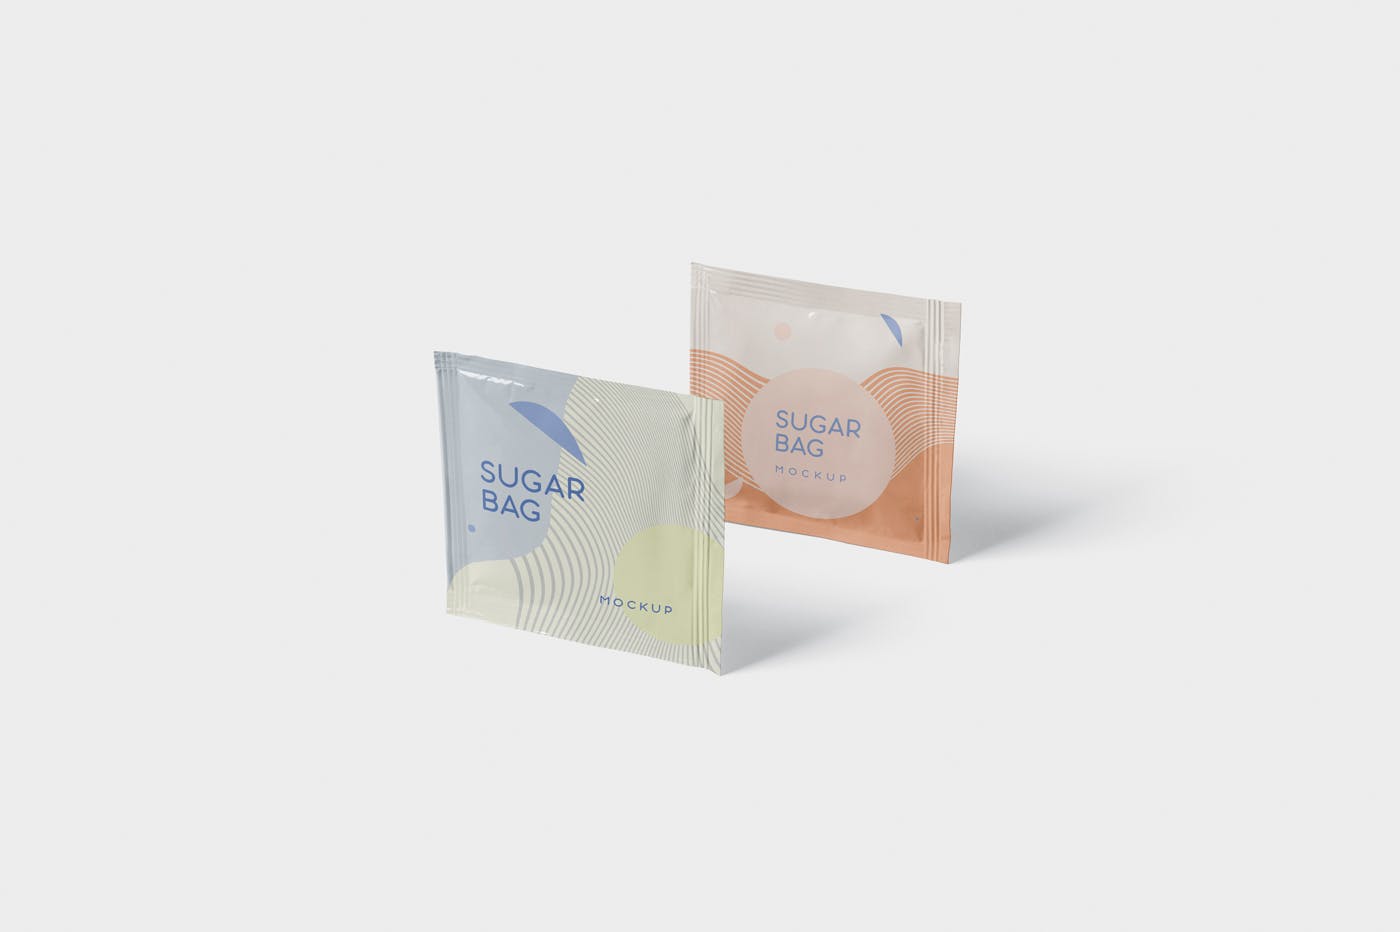 盐袋糖袋包装设计效果图大洋岛精选 Salt OR Sugar Bag Mockup – Square Shaped插图3